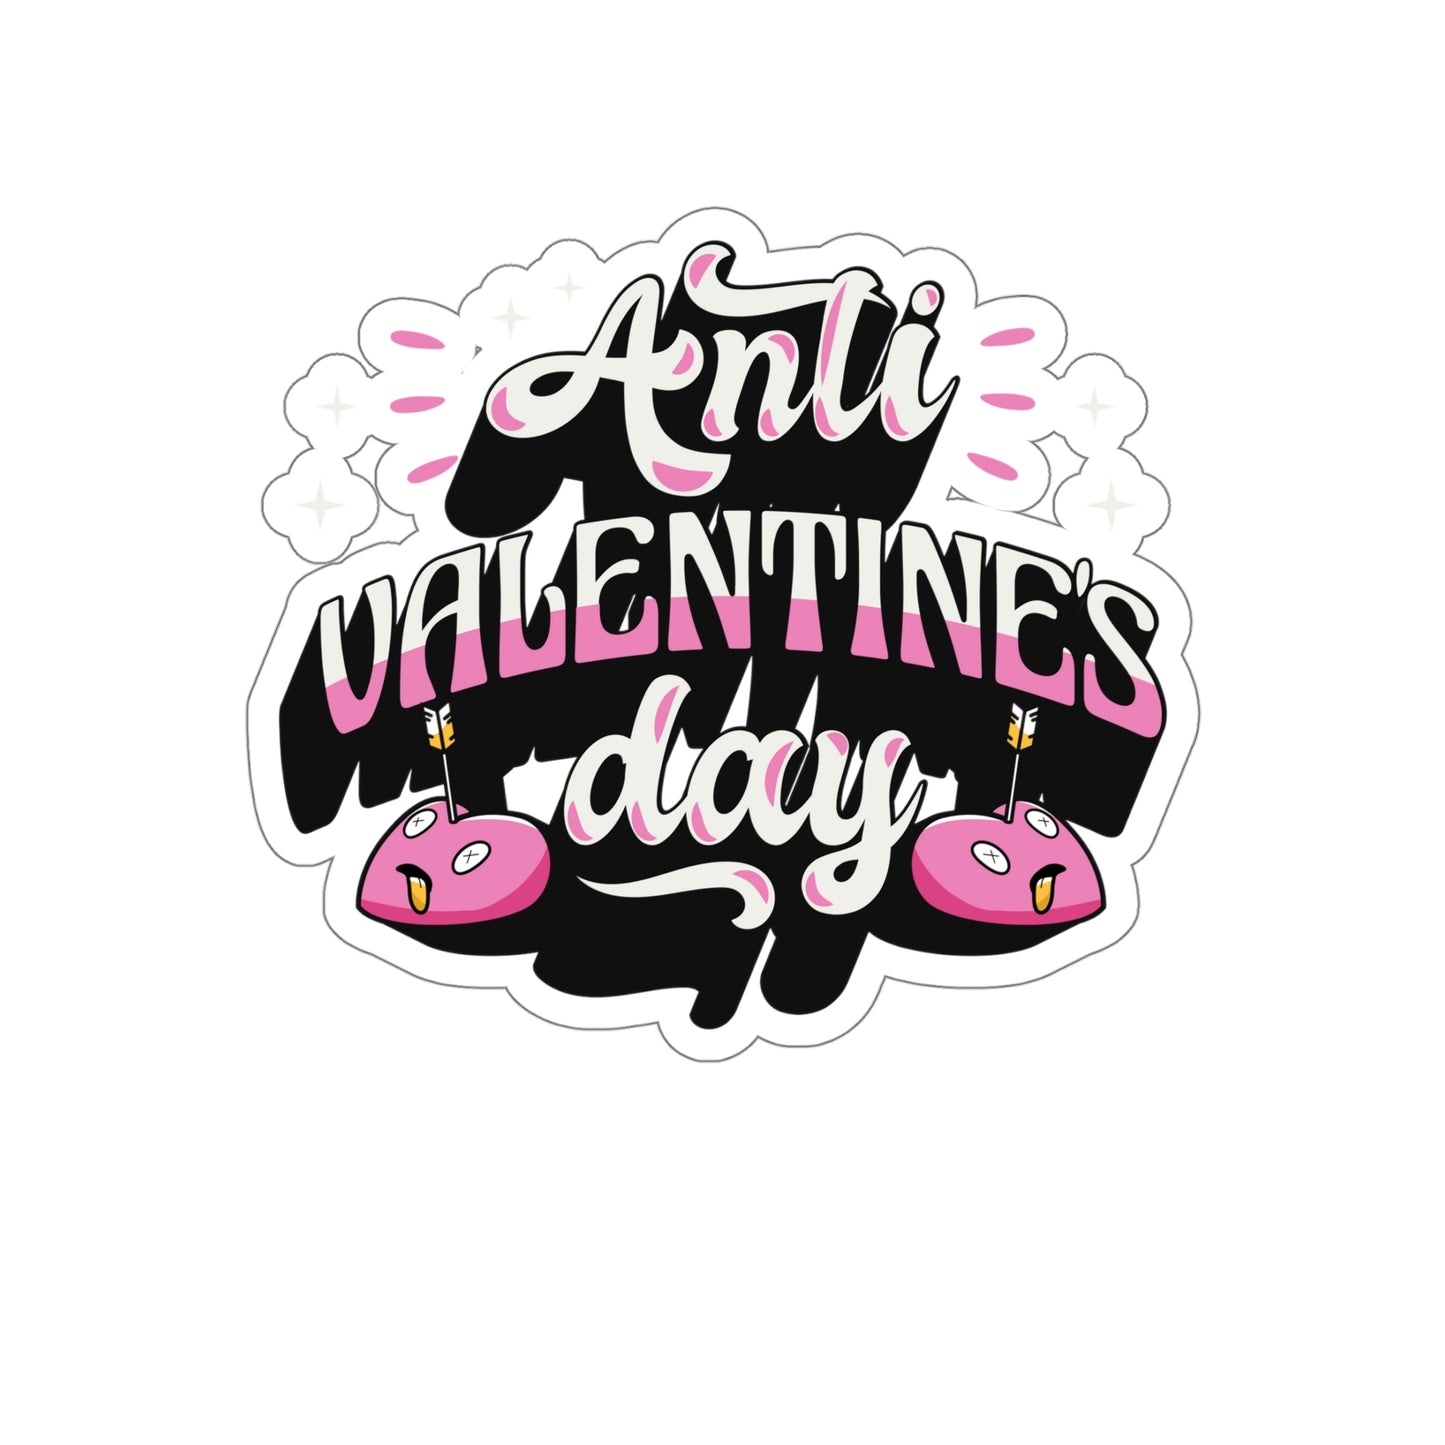 Anti Valentines Day Sticker